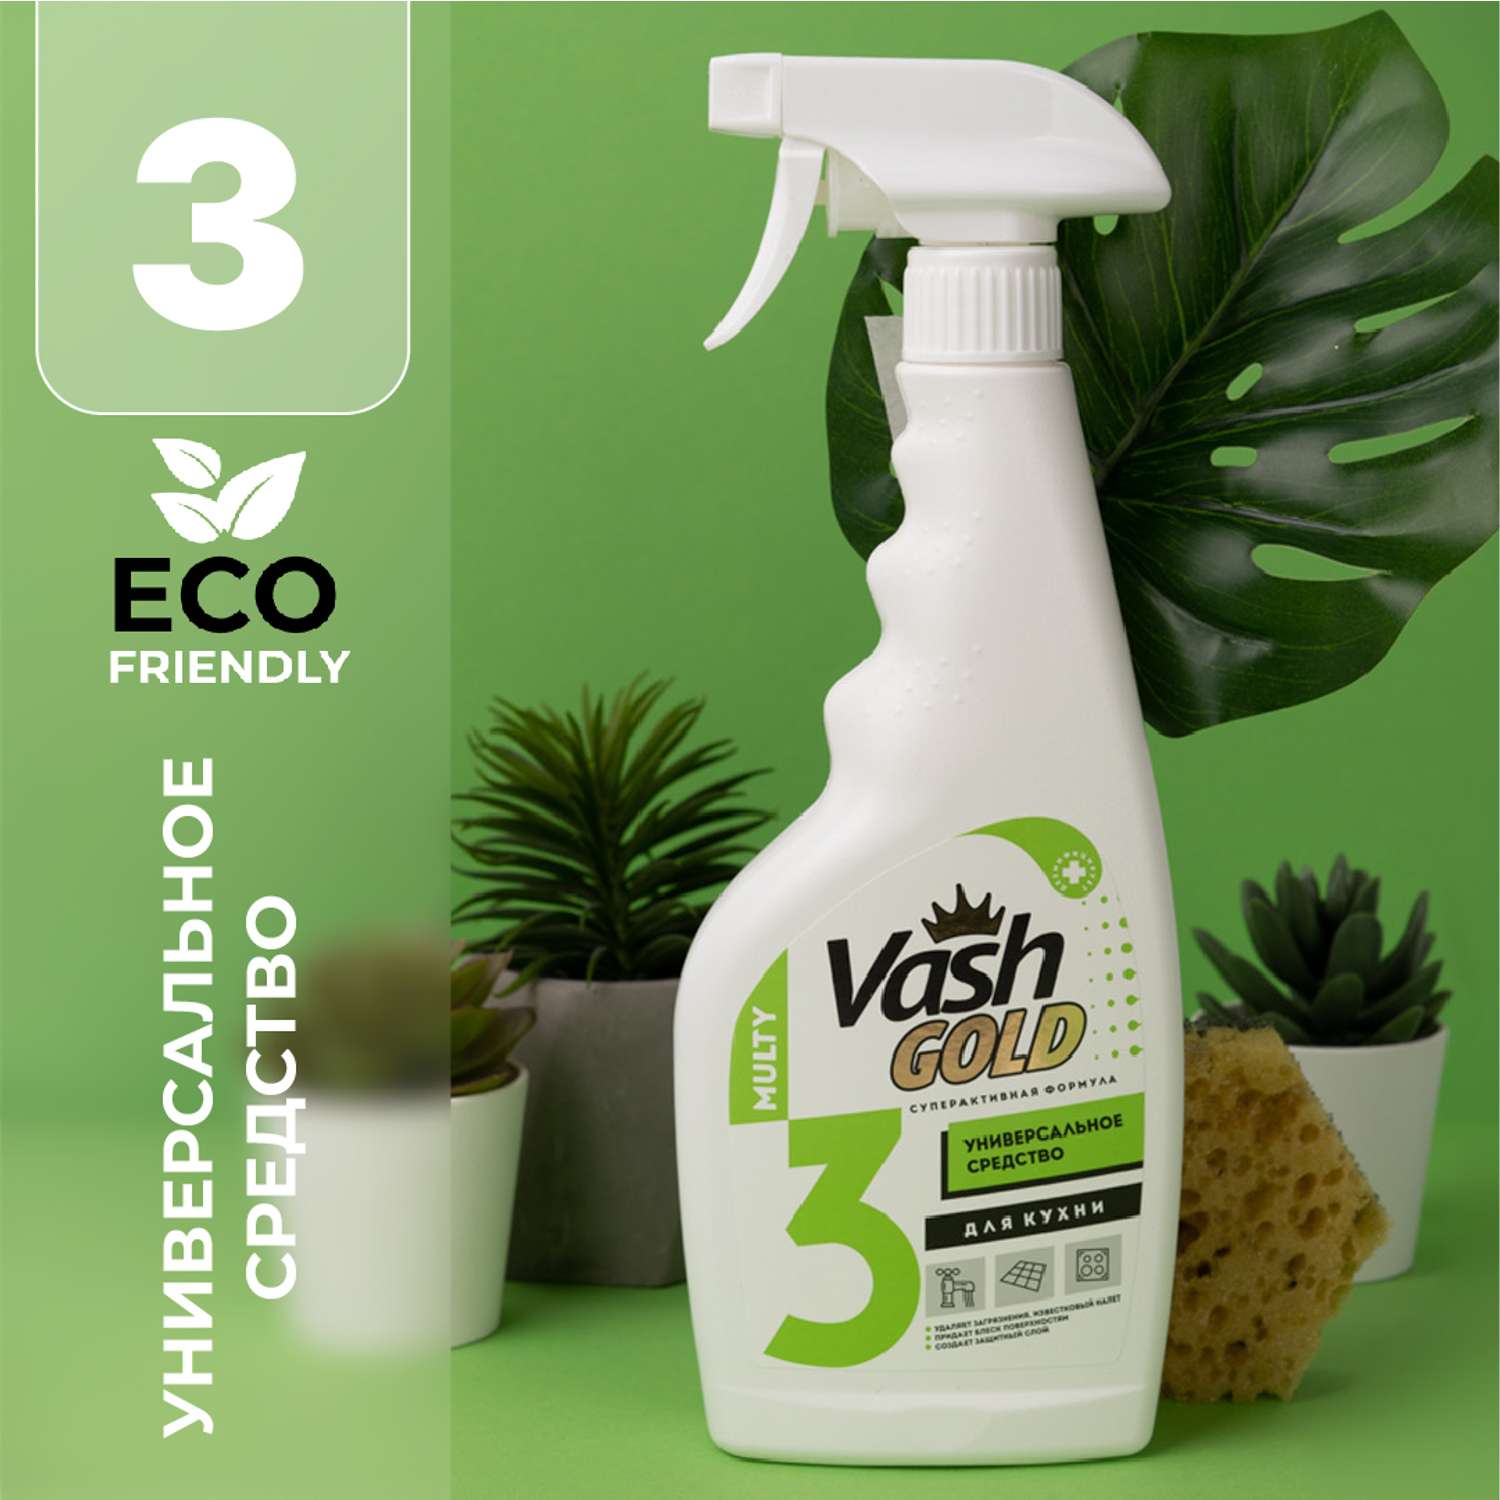 Чистящее средство Vash Gold универсальное для всего дома Eco спрей 500мл - фото 1